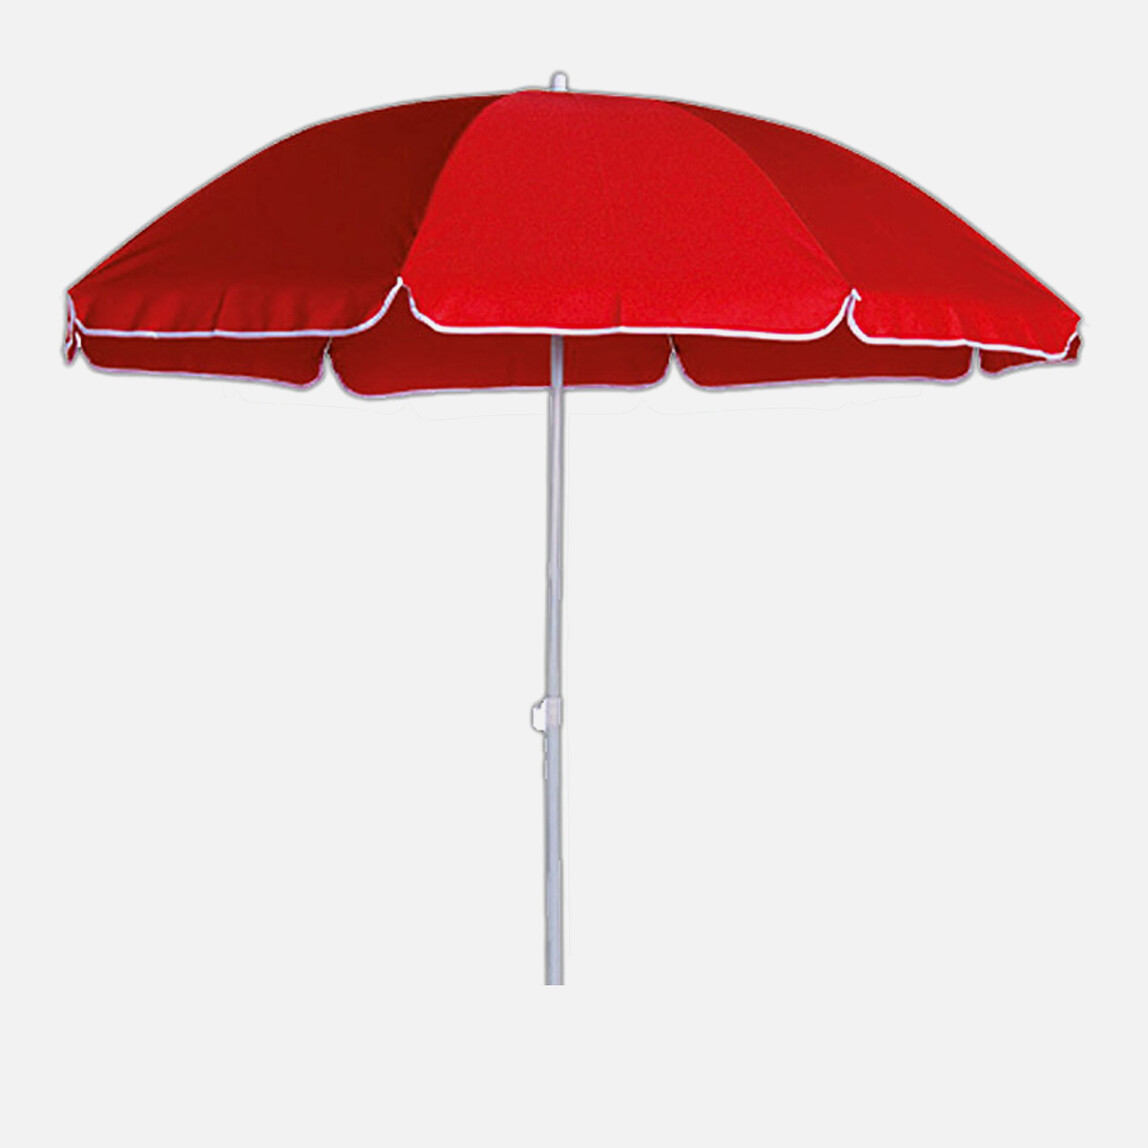    Sunfun Provence II Şemsiye Kırmızı 250 cm  